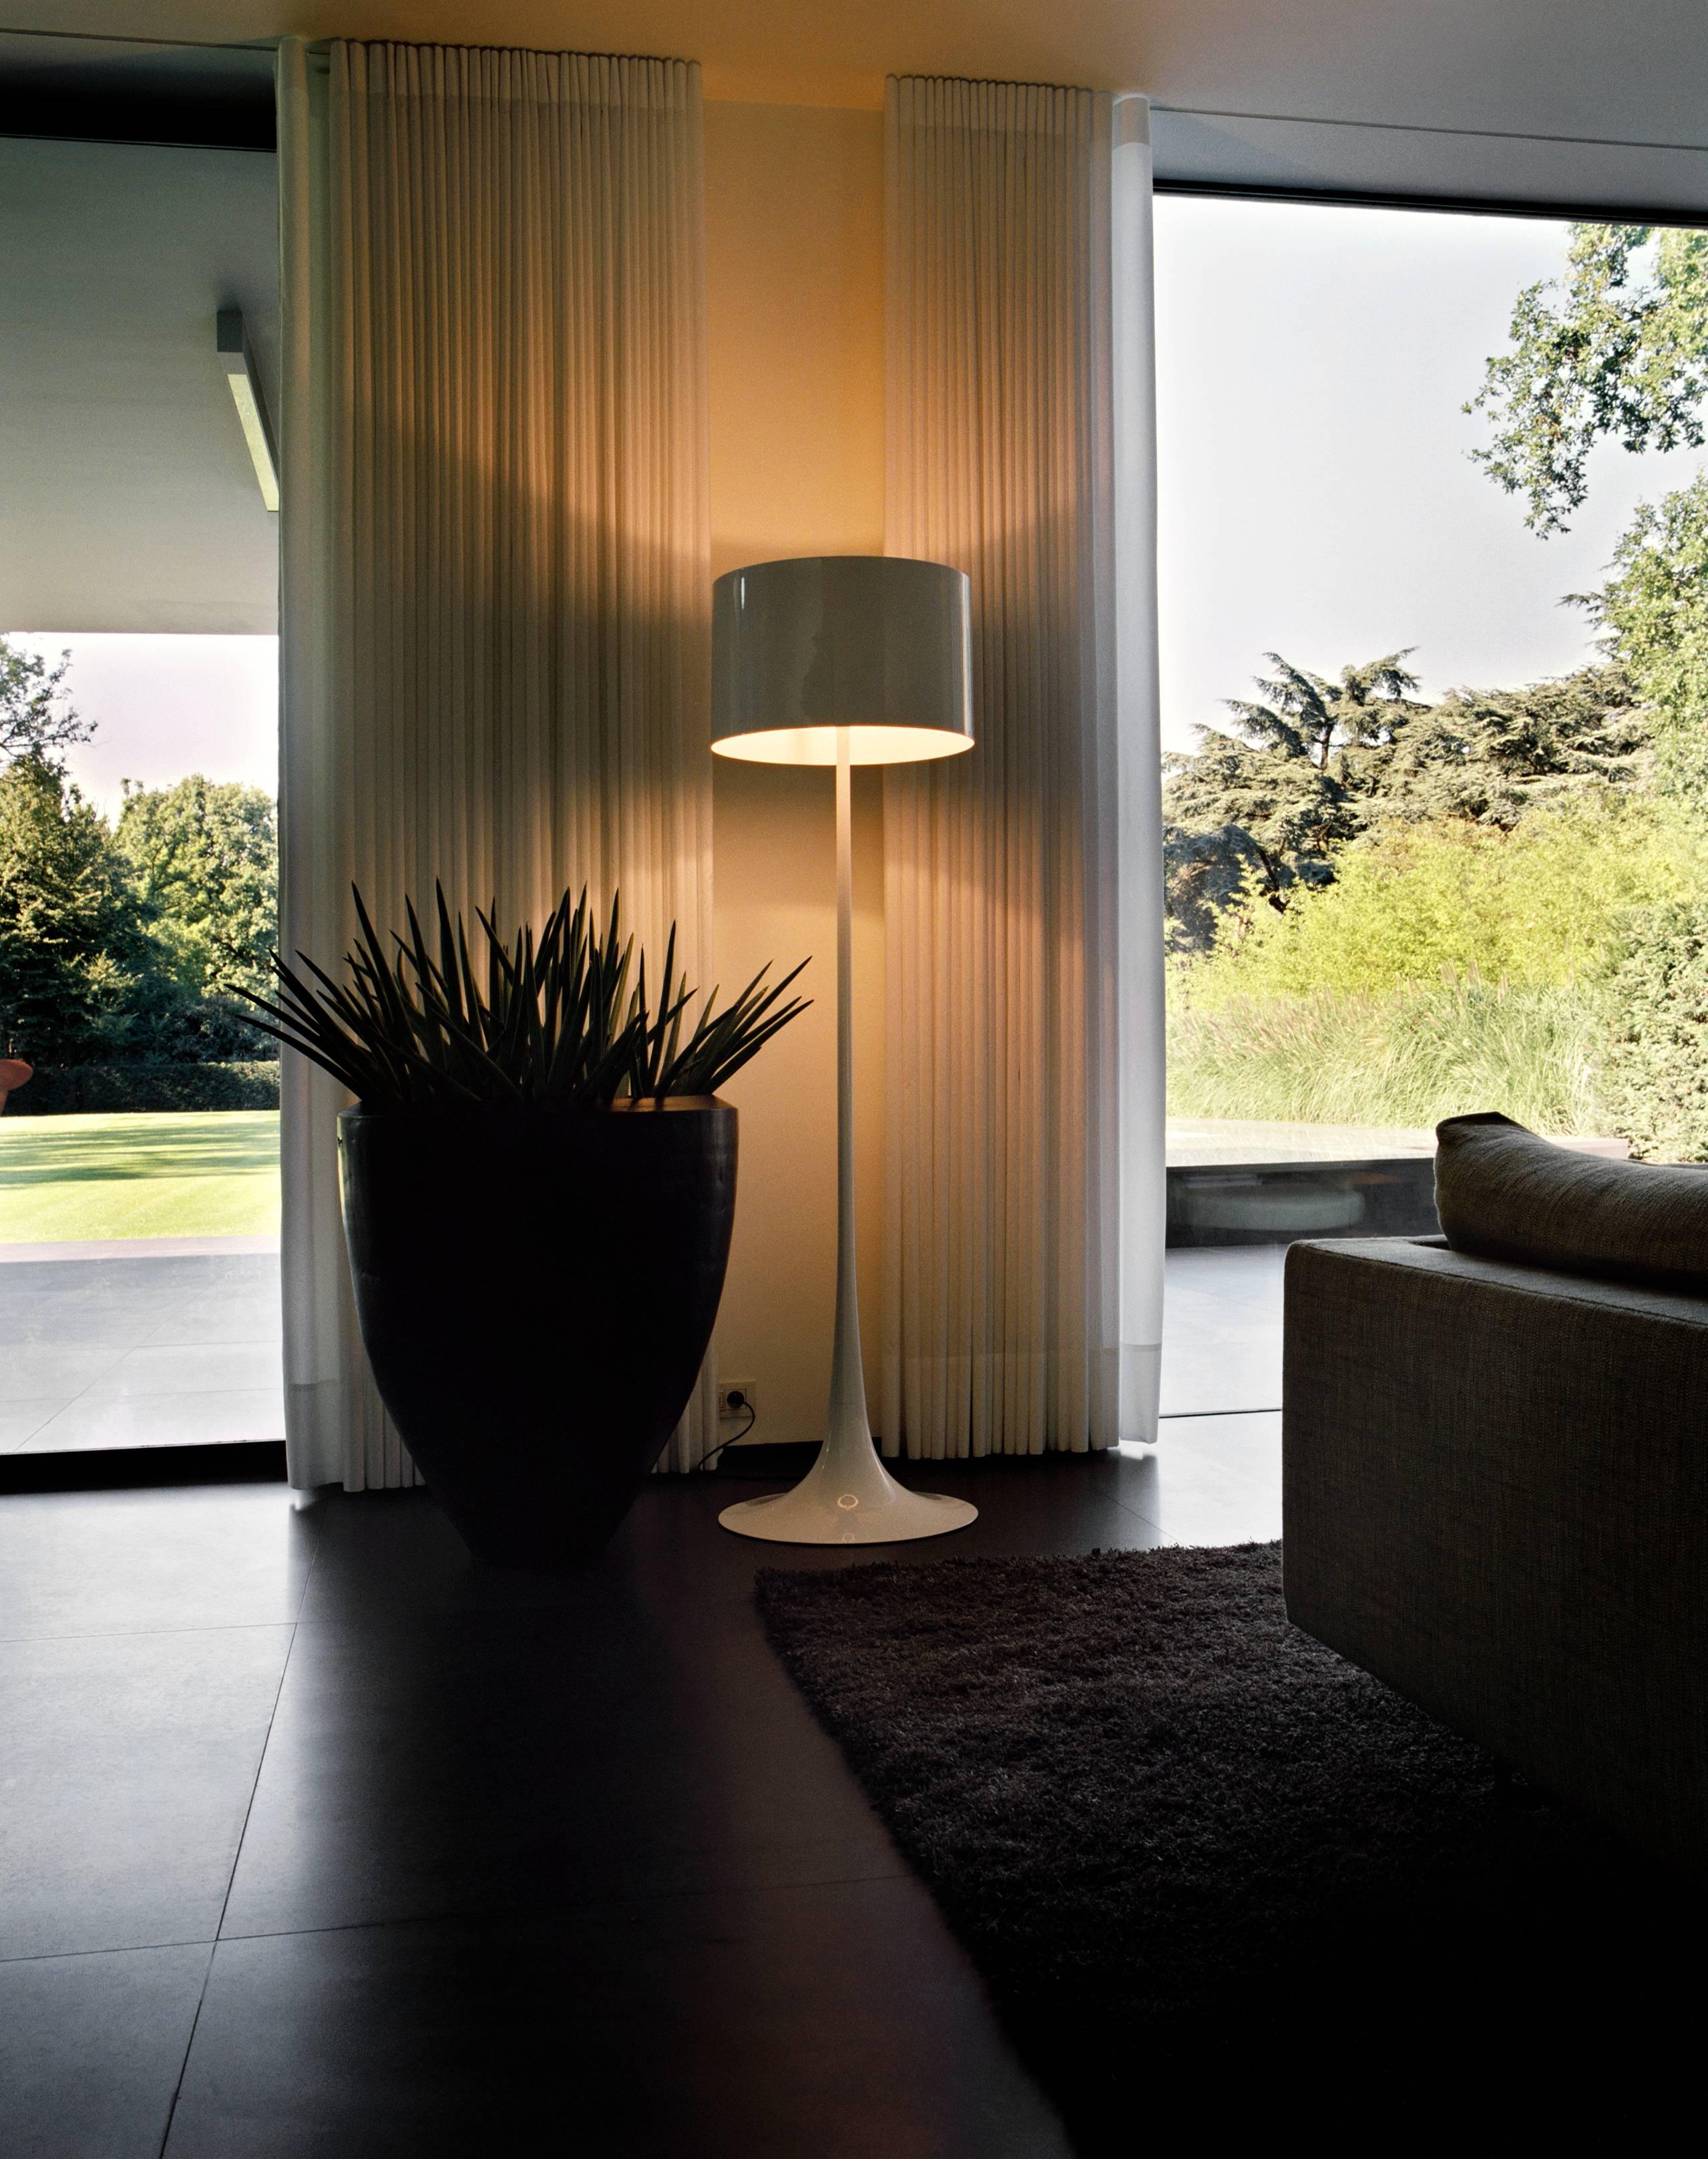 Conçu par Sebastian Wrong en 2003, le lampadaire Spun Light-F reflète le meilleur de la technologie de fabrication moderne associée à l'élégance, au savoir-faire et à une esthétique fluide et dynamique.

Son corps principal comporte un cadre et un